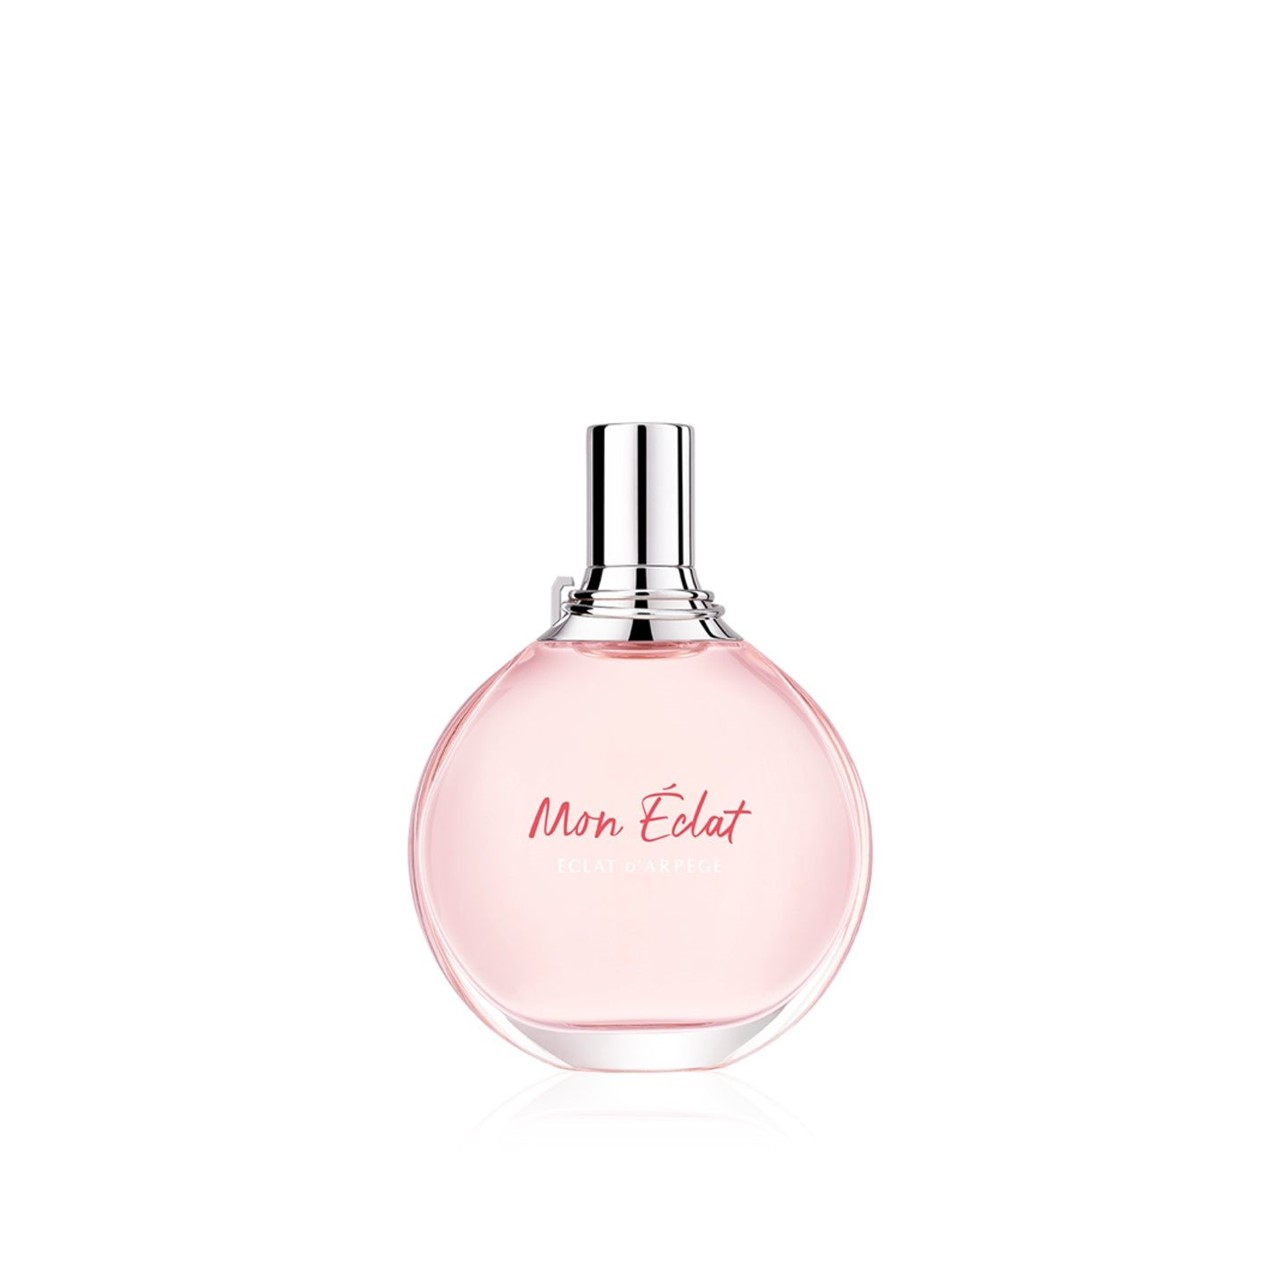 Eclat D'arpege Perfume By Lanvin for Women